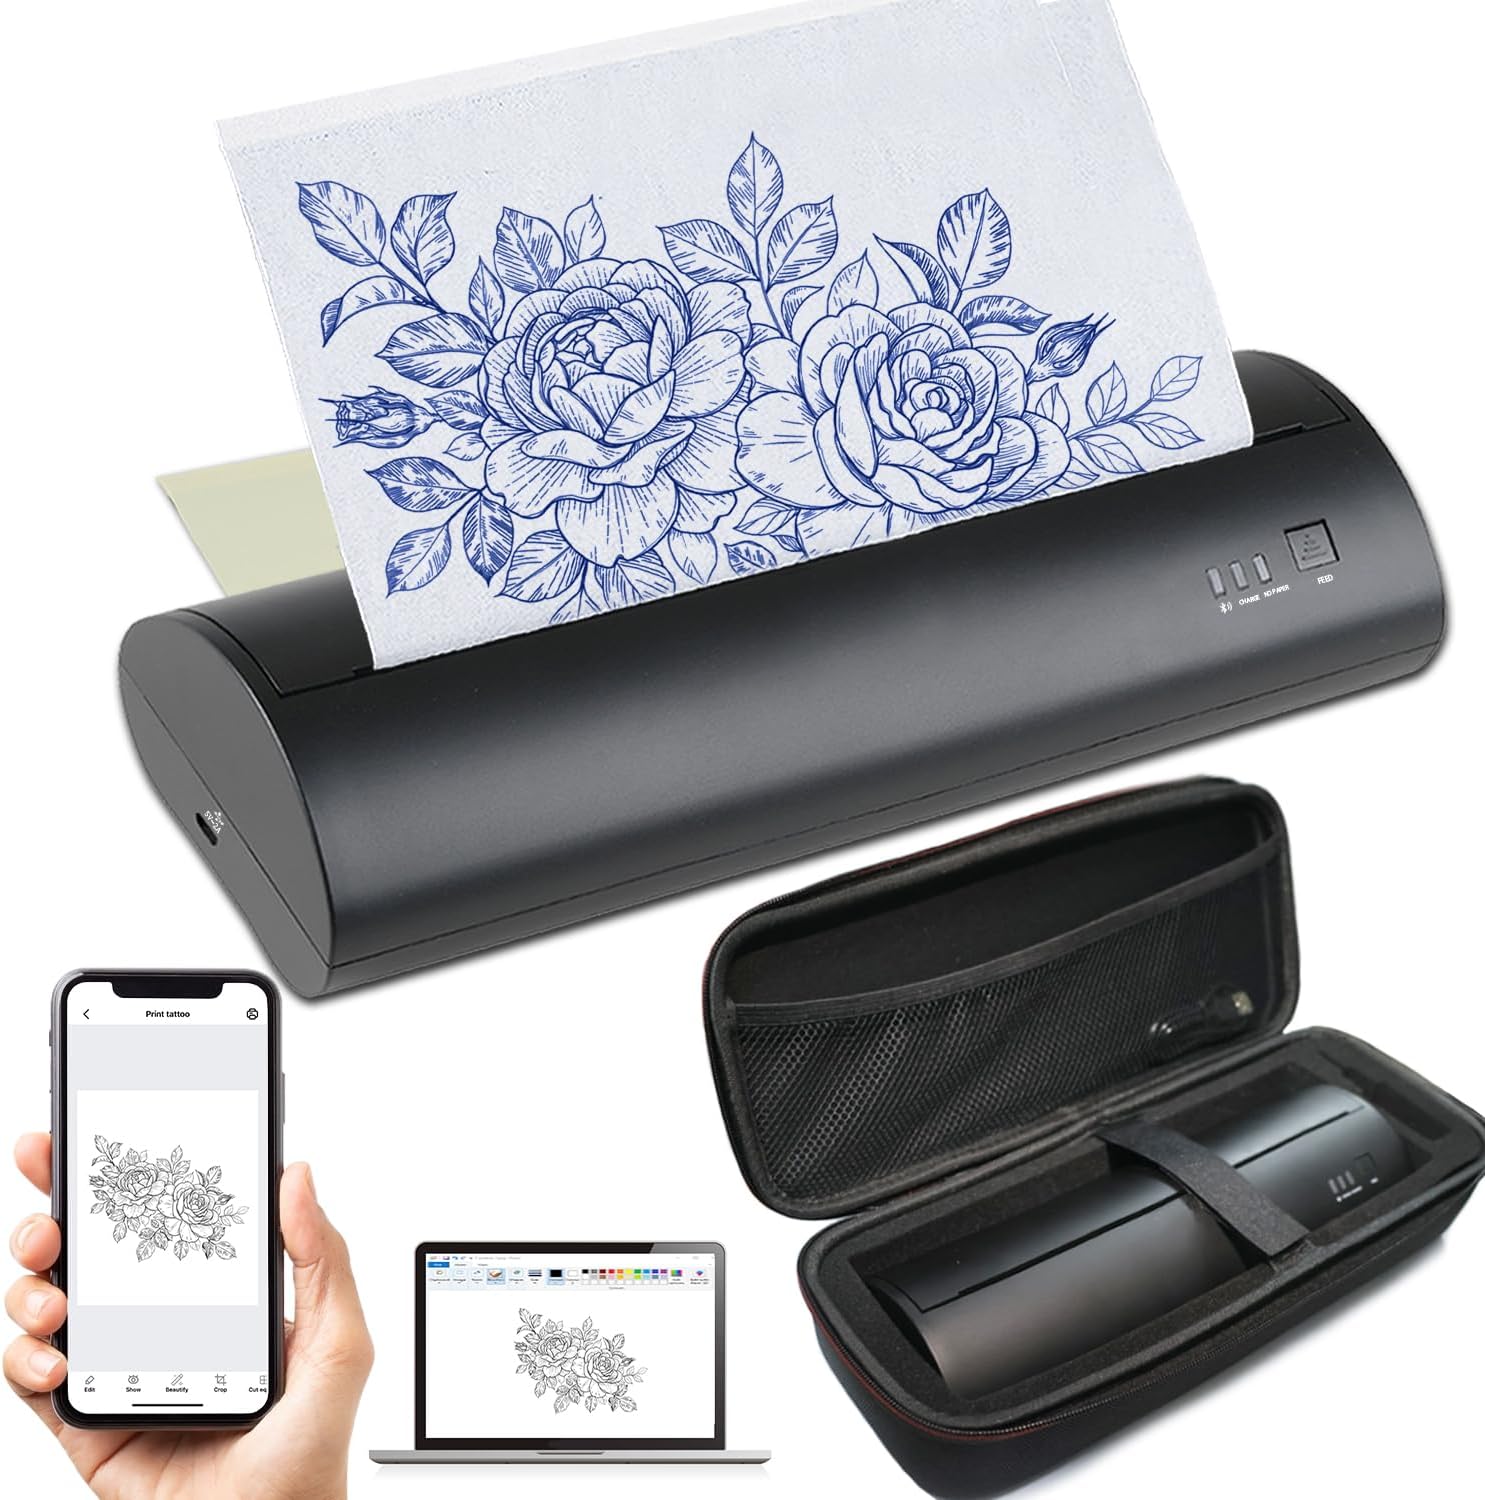 Calicon Wireless Portable Tattoo Stencil Printer MHT-P8009